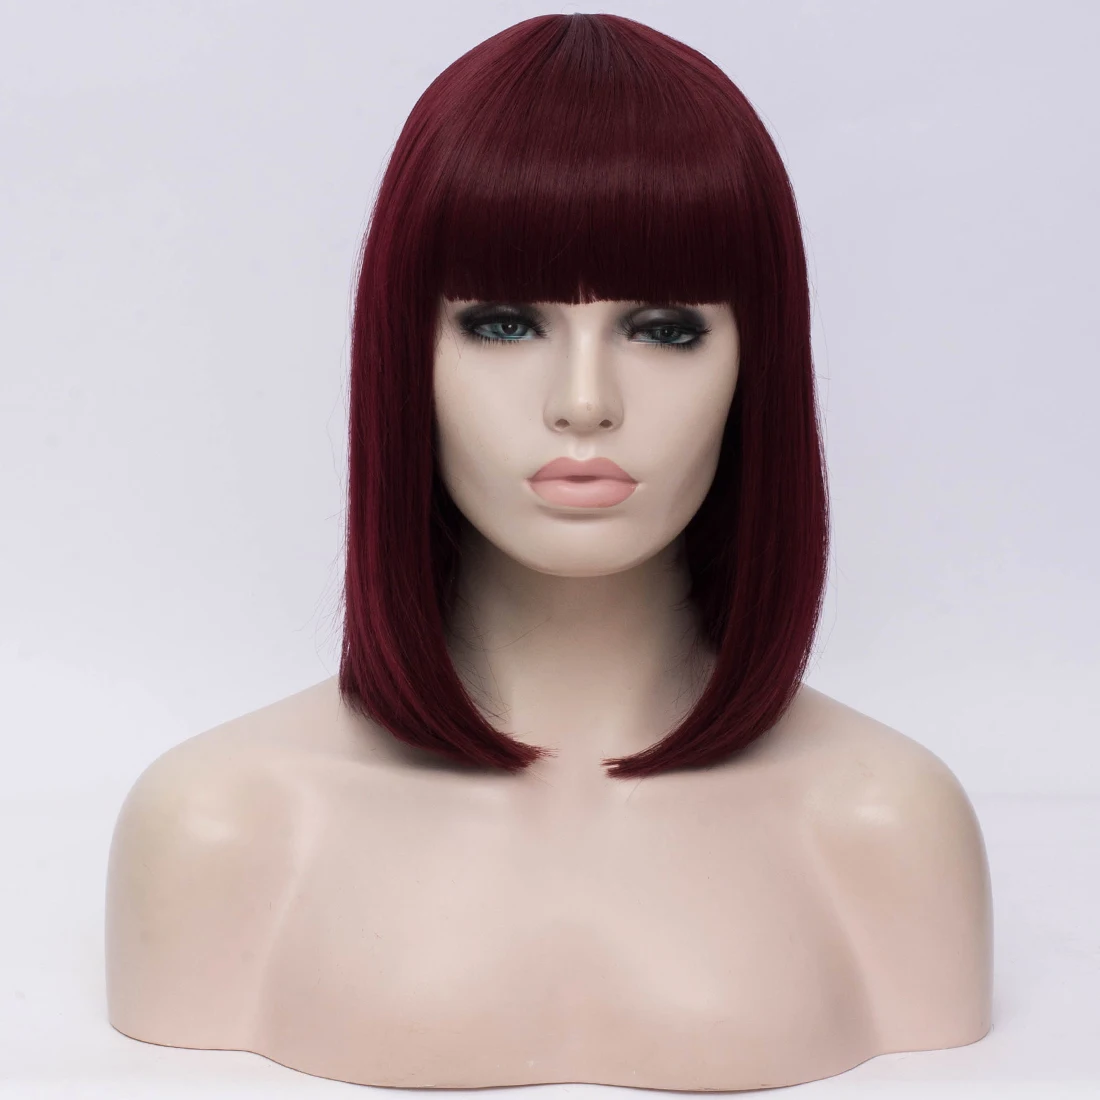 Синтетические волосы 14 дюймов черные прямые парики челки синий золотистого цвета, цвета: красный, зеленый, фиолетовый, коричневый Косплэй парик для женщин